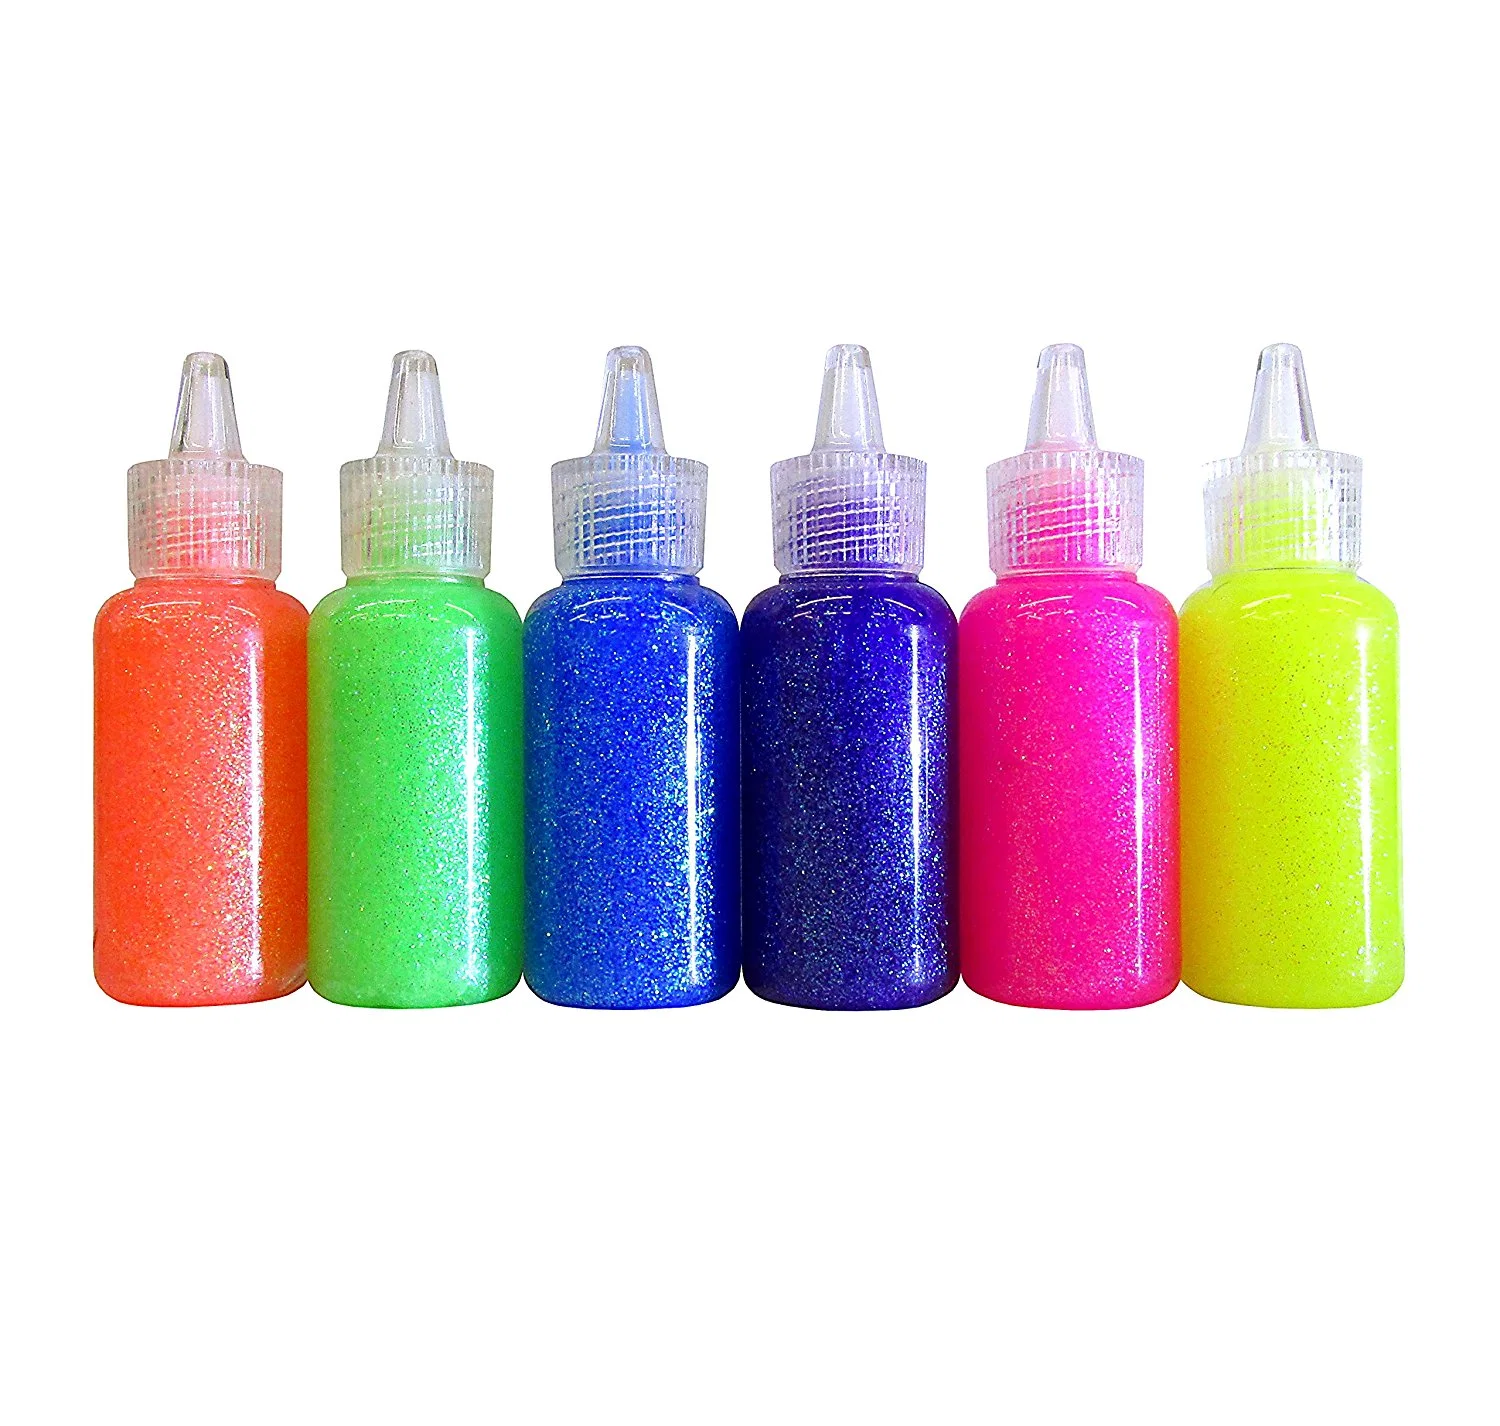 Lavable Mini Glitter Glue, el arte de herramientas, ideal para las Artes y Oficios